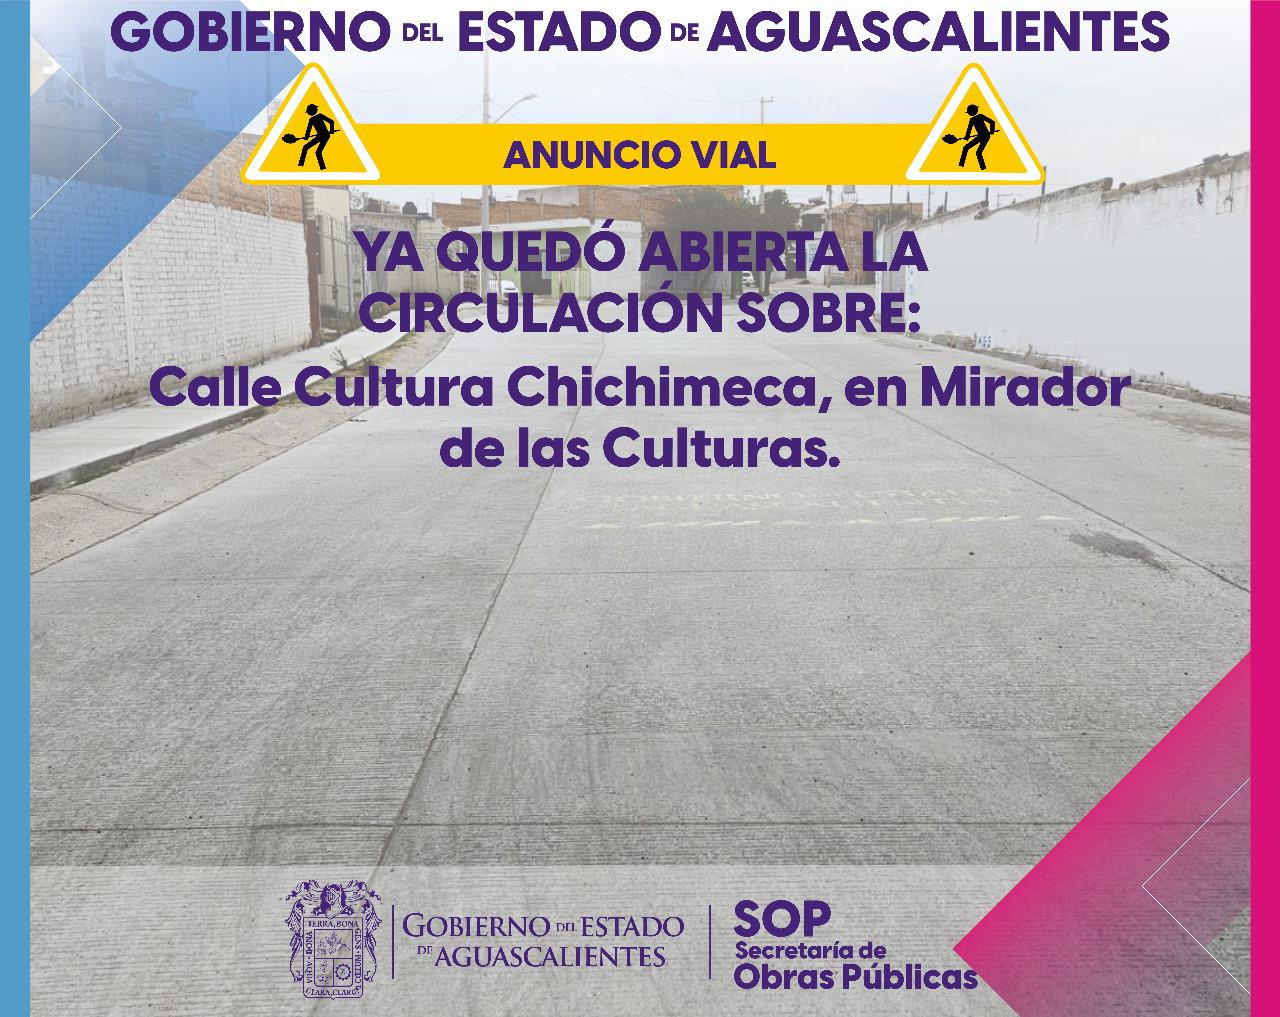 Ya está abierta la circulación sobre la calle Cultura Chichimeca